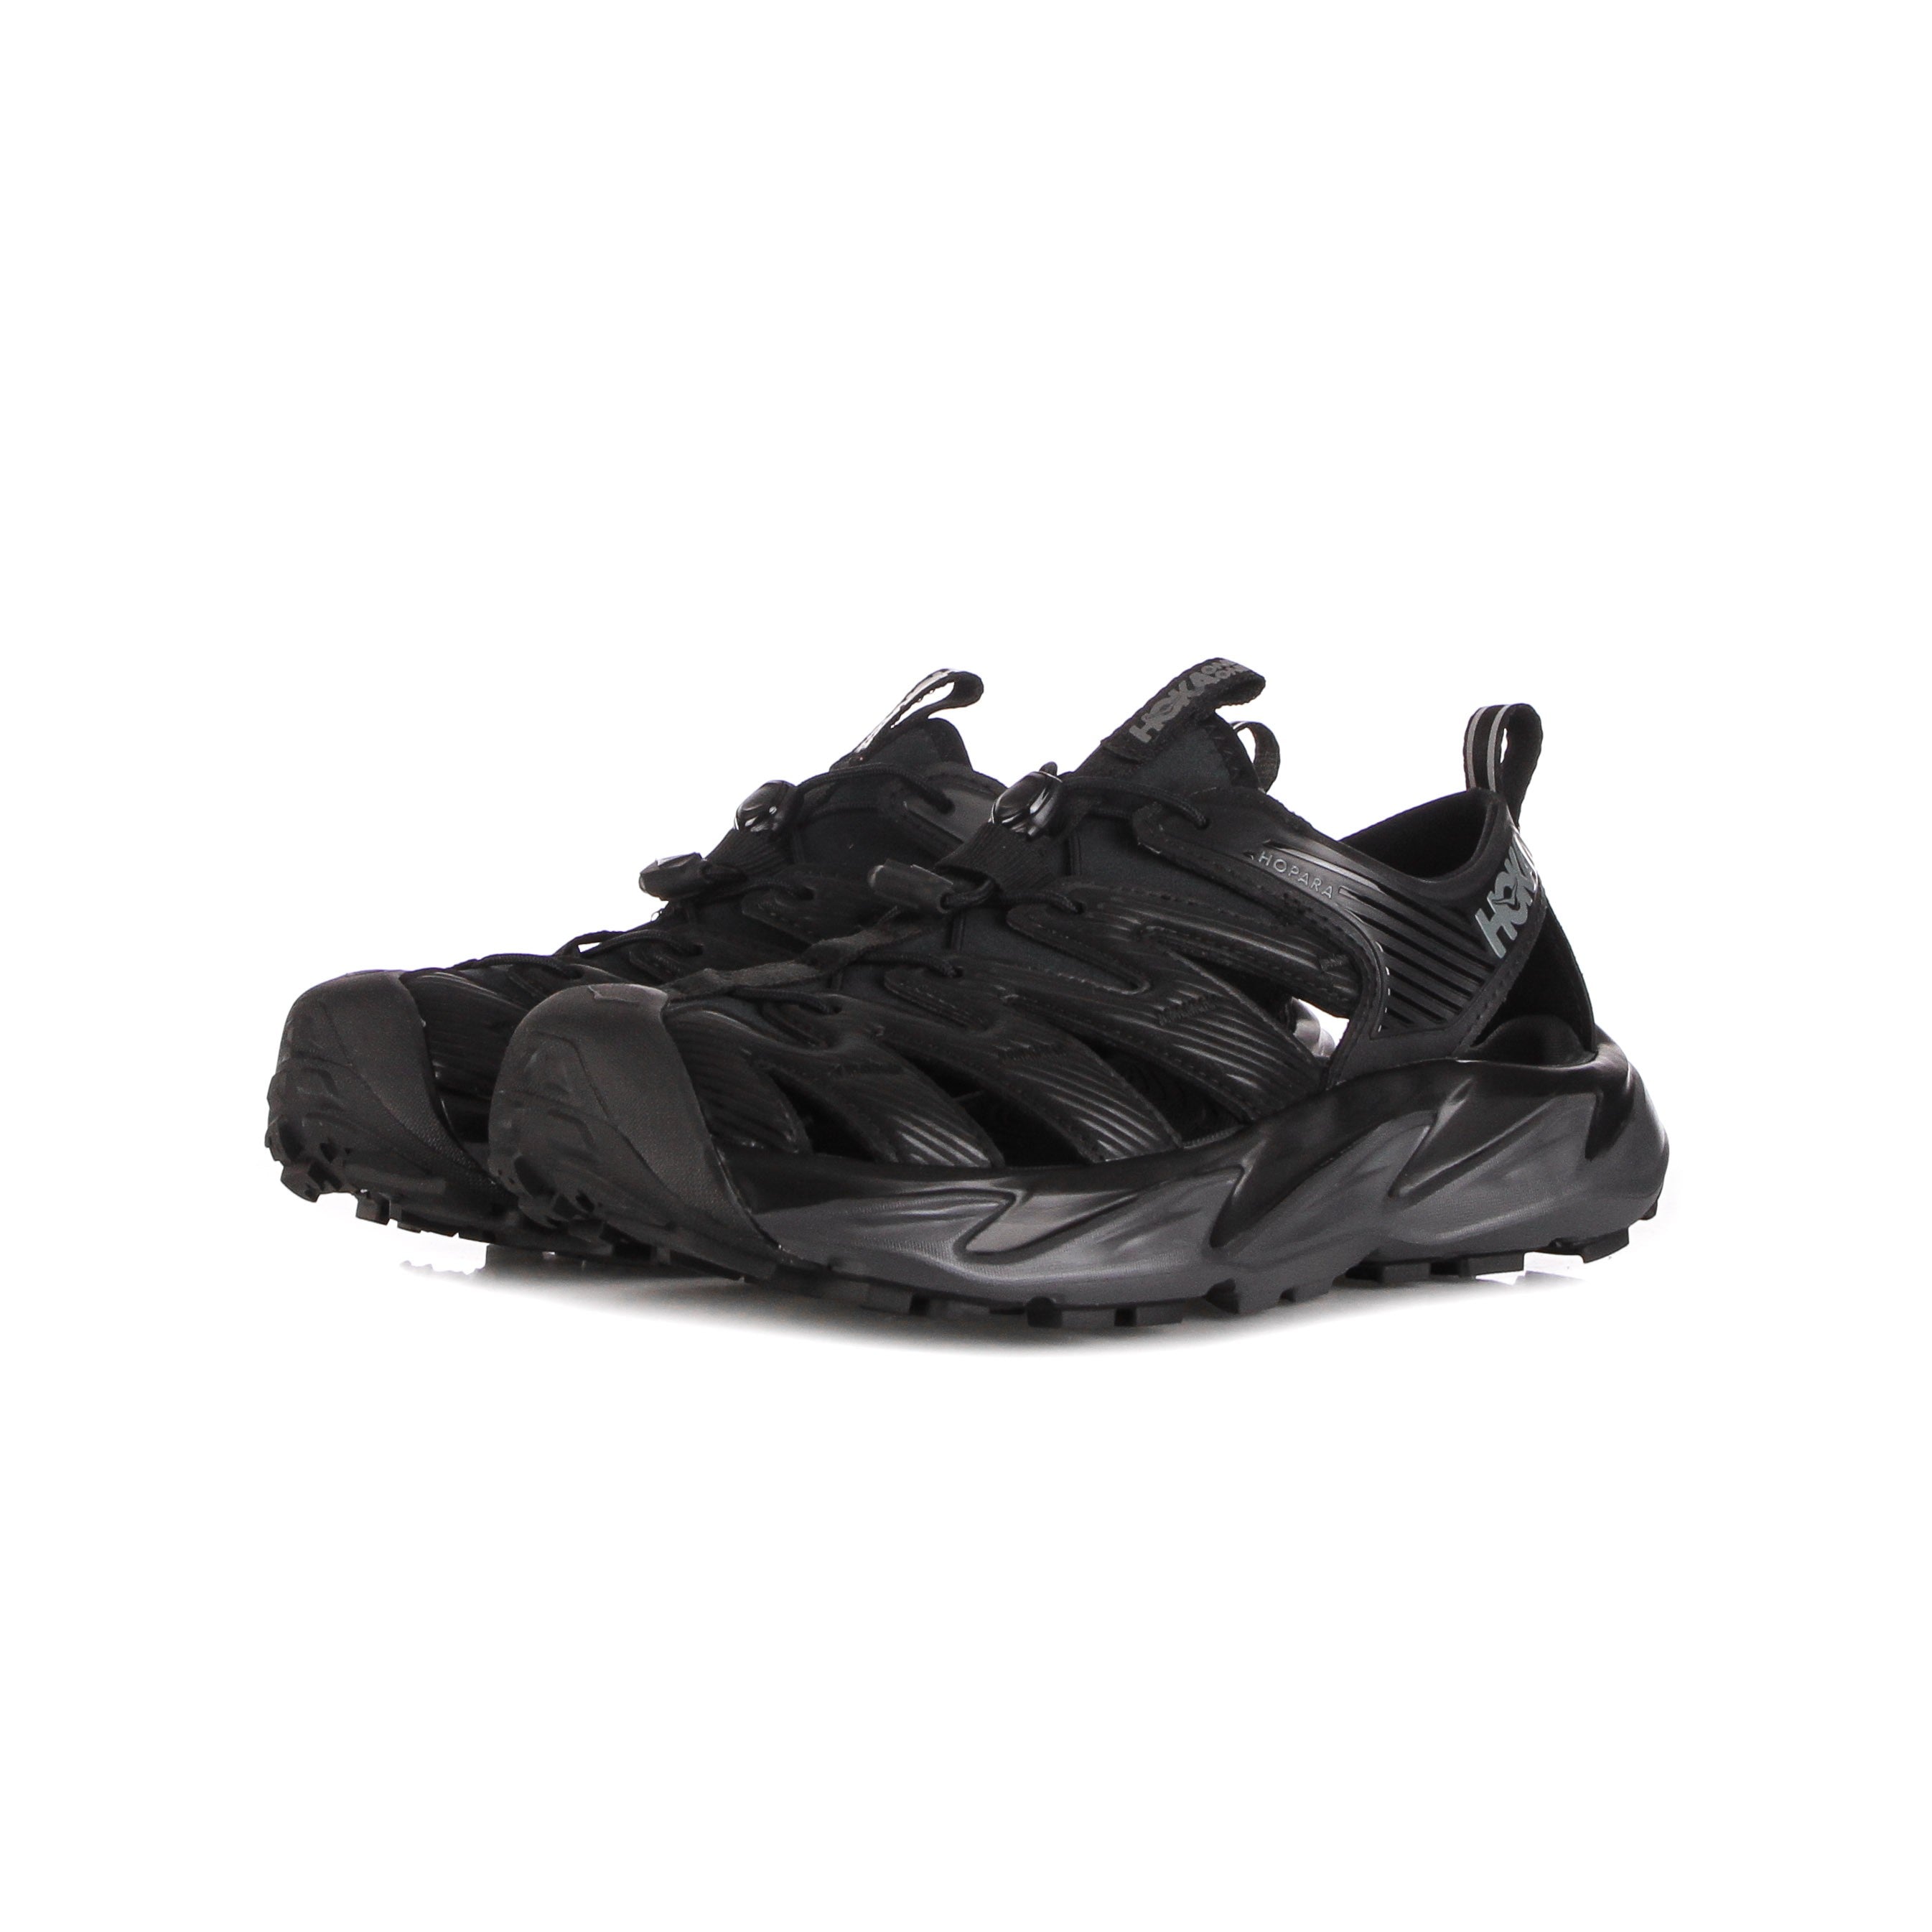 Hopara Men's Outdoor Shoe Black/dark Shadow